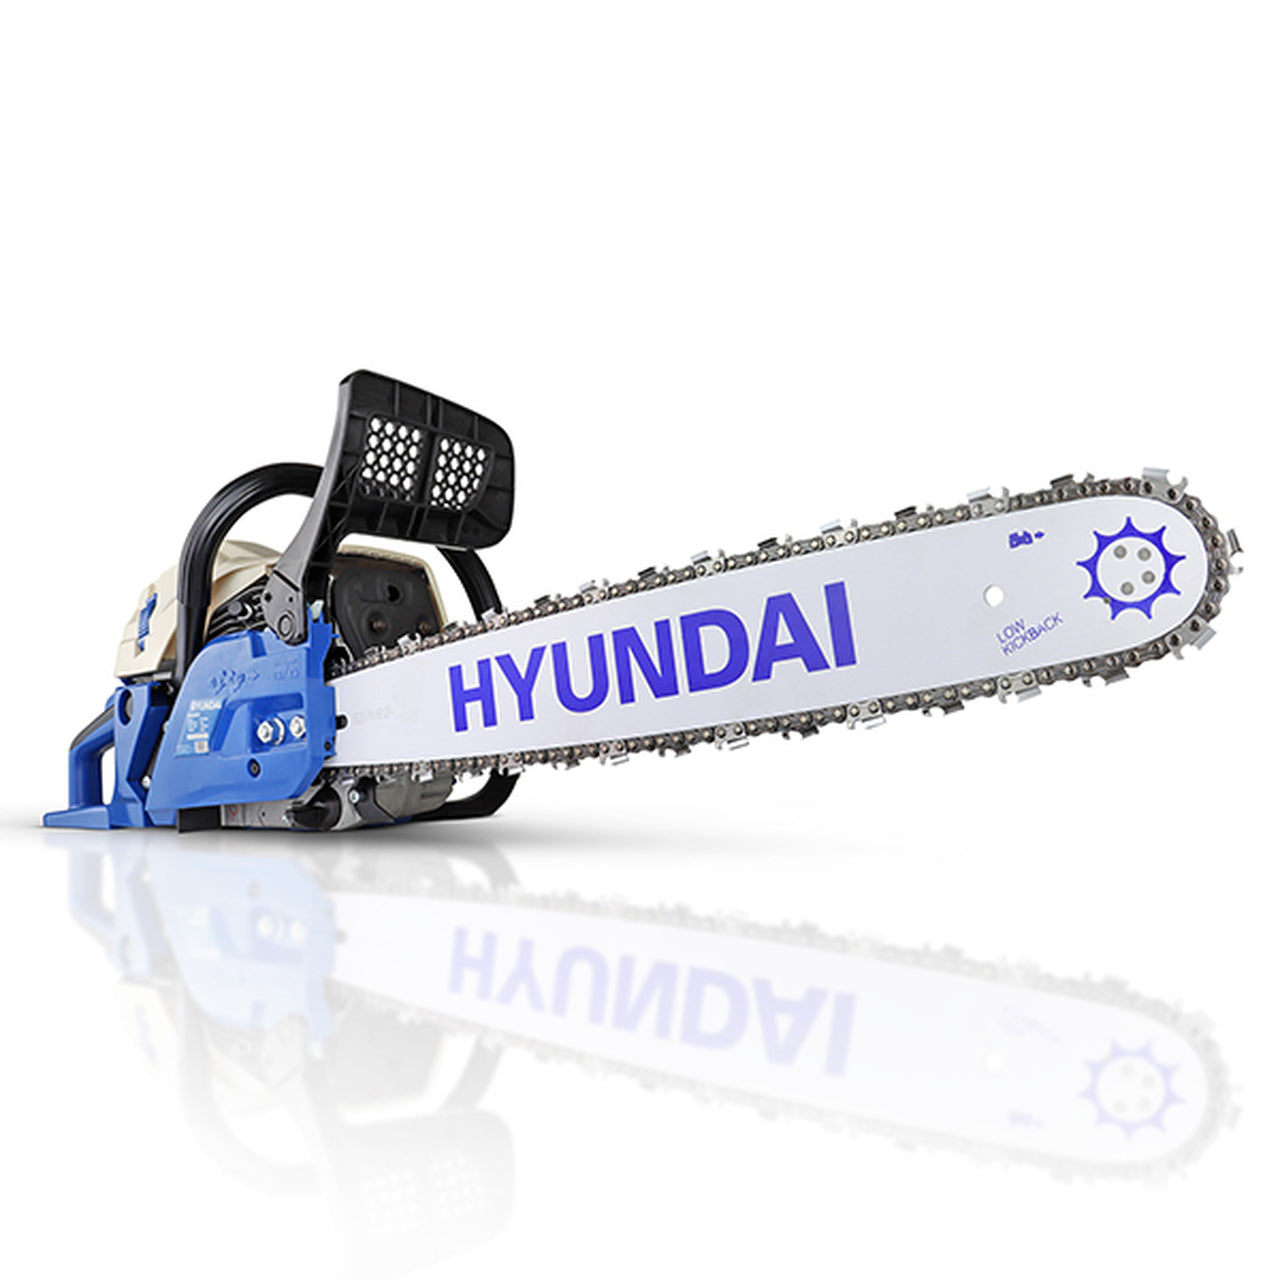 Hyundai HYC6200X 62cc 20�? Petrol Chainsaw, 2-Stroke Easy-Start